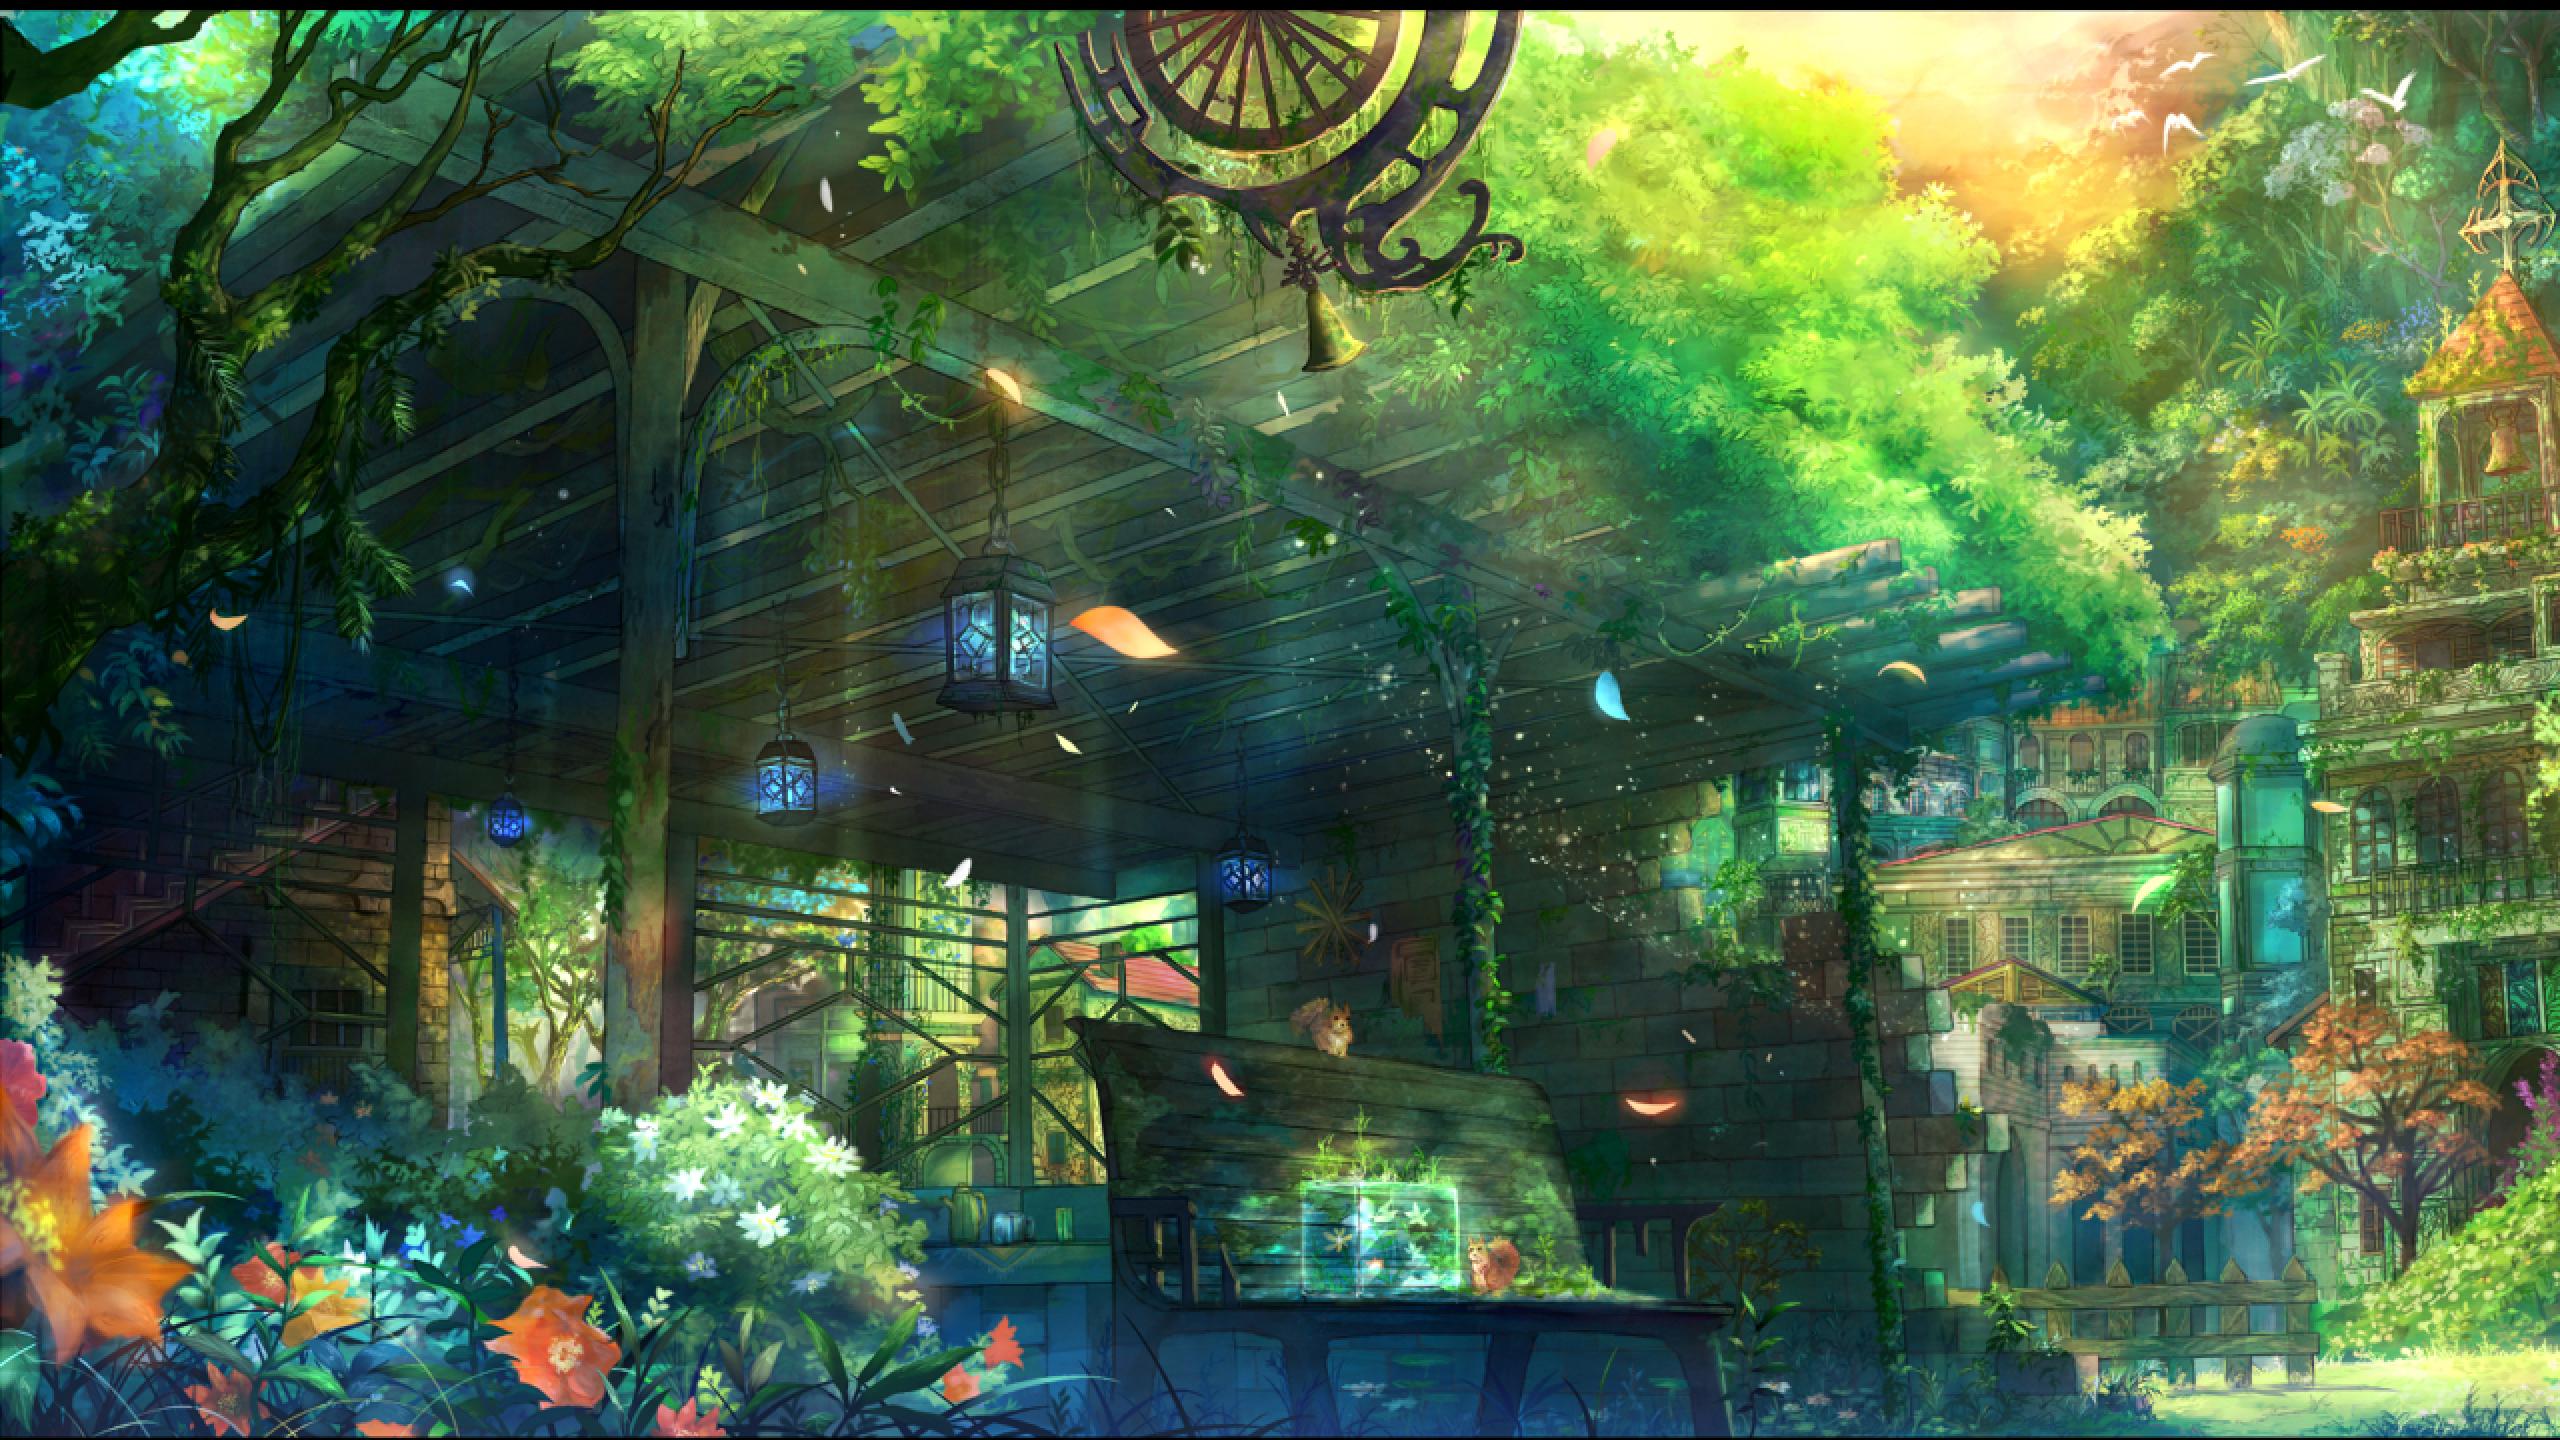 Hình nền widescreen anime vườn đẹp lấy cảm hứng từ một thế giới đang triển khai trước mắt. Những cánh đồng tươi tốt và hoa lá rực rỡ kết hợp với nhân vật anime đầy sức sống sẽ mang đến cho bạn một tầm nhìn rộng hơn về cuộc sống và vũ trụ.